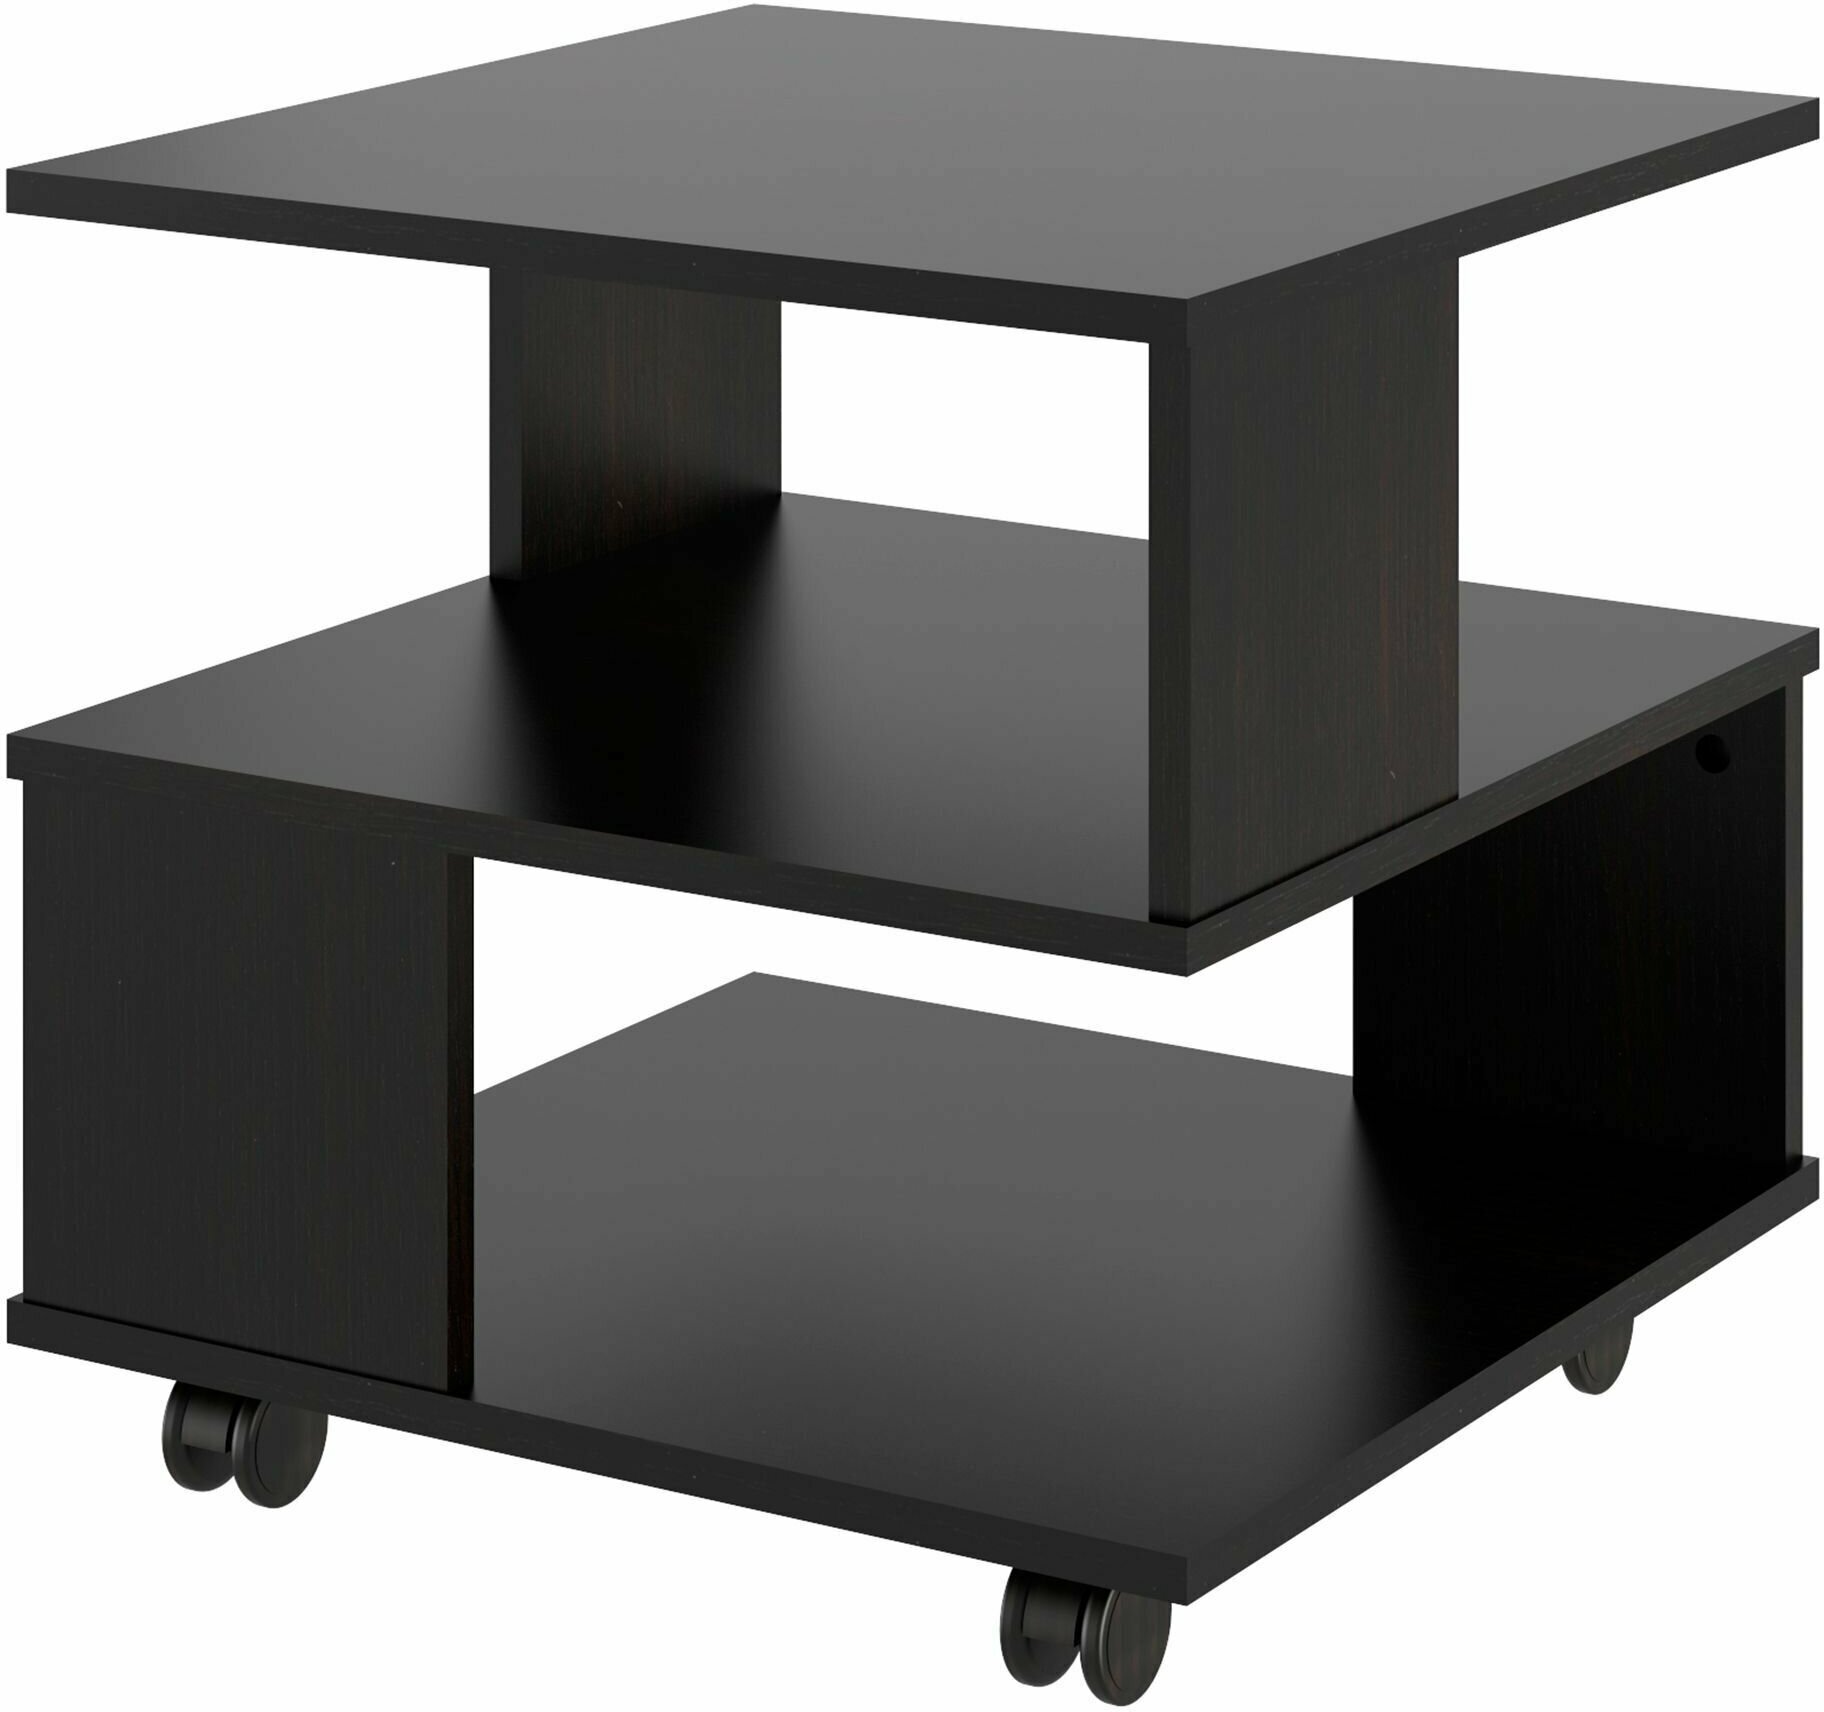 Журнальный столик, сервировочный стол Beneli алекс, квадратный, Дуб феррара, 49,5х49,5х48,3 см, 1 шт.